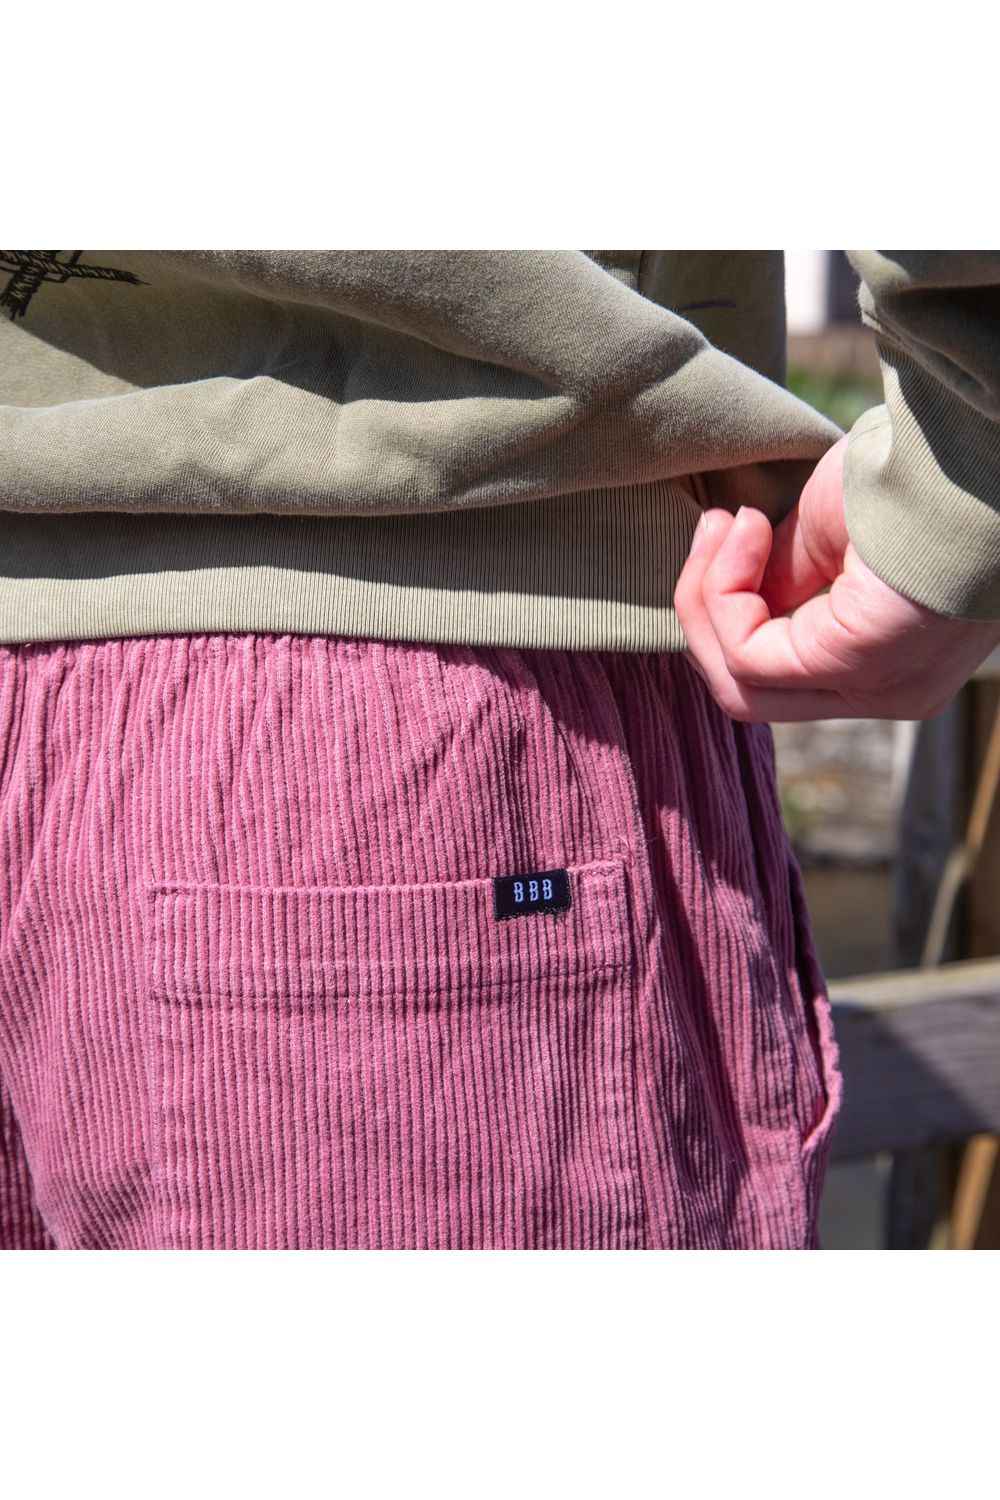 Bamboobay cord shorts in lilac back pocket close up 